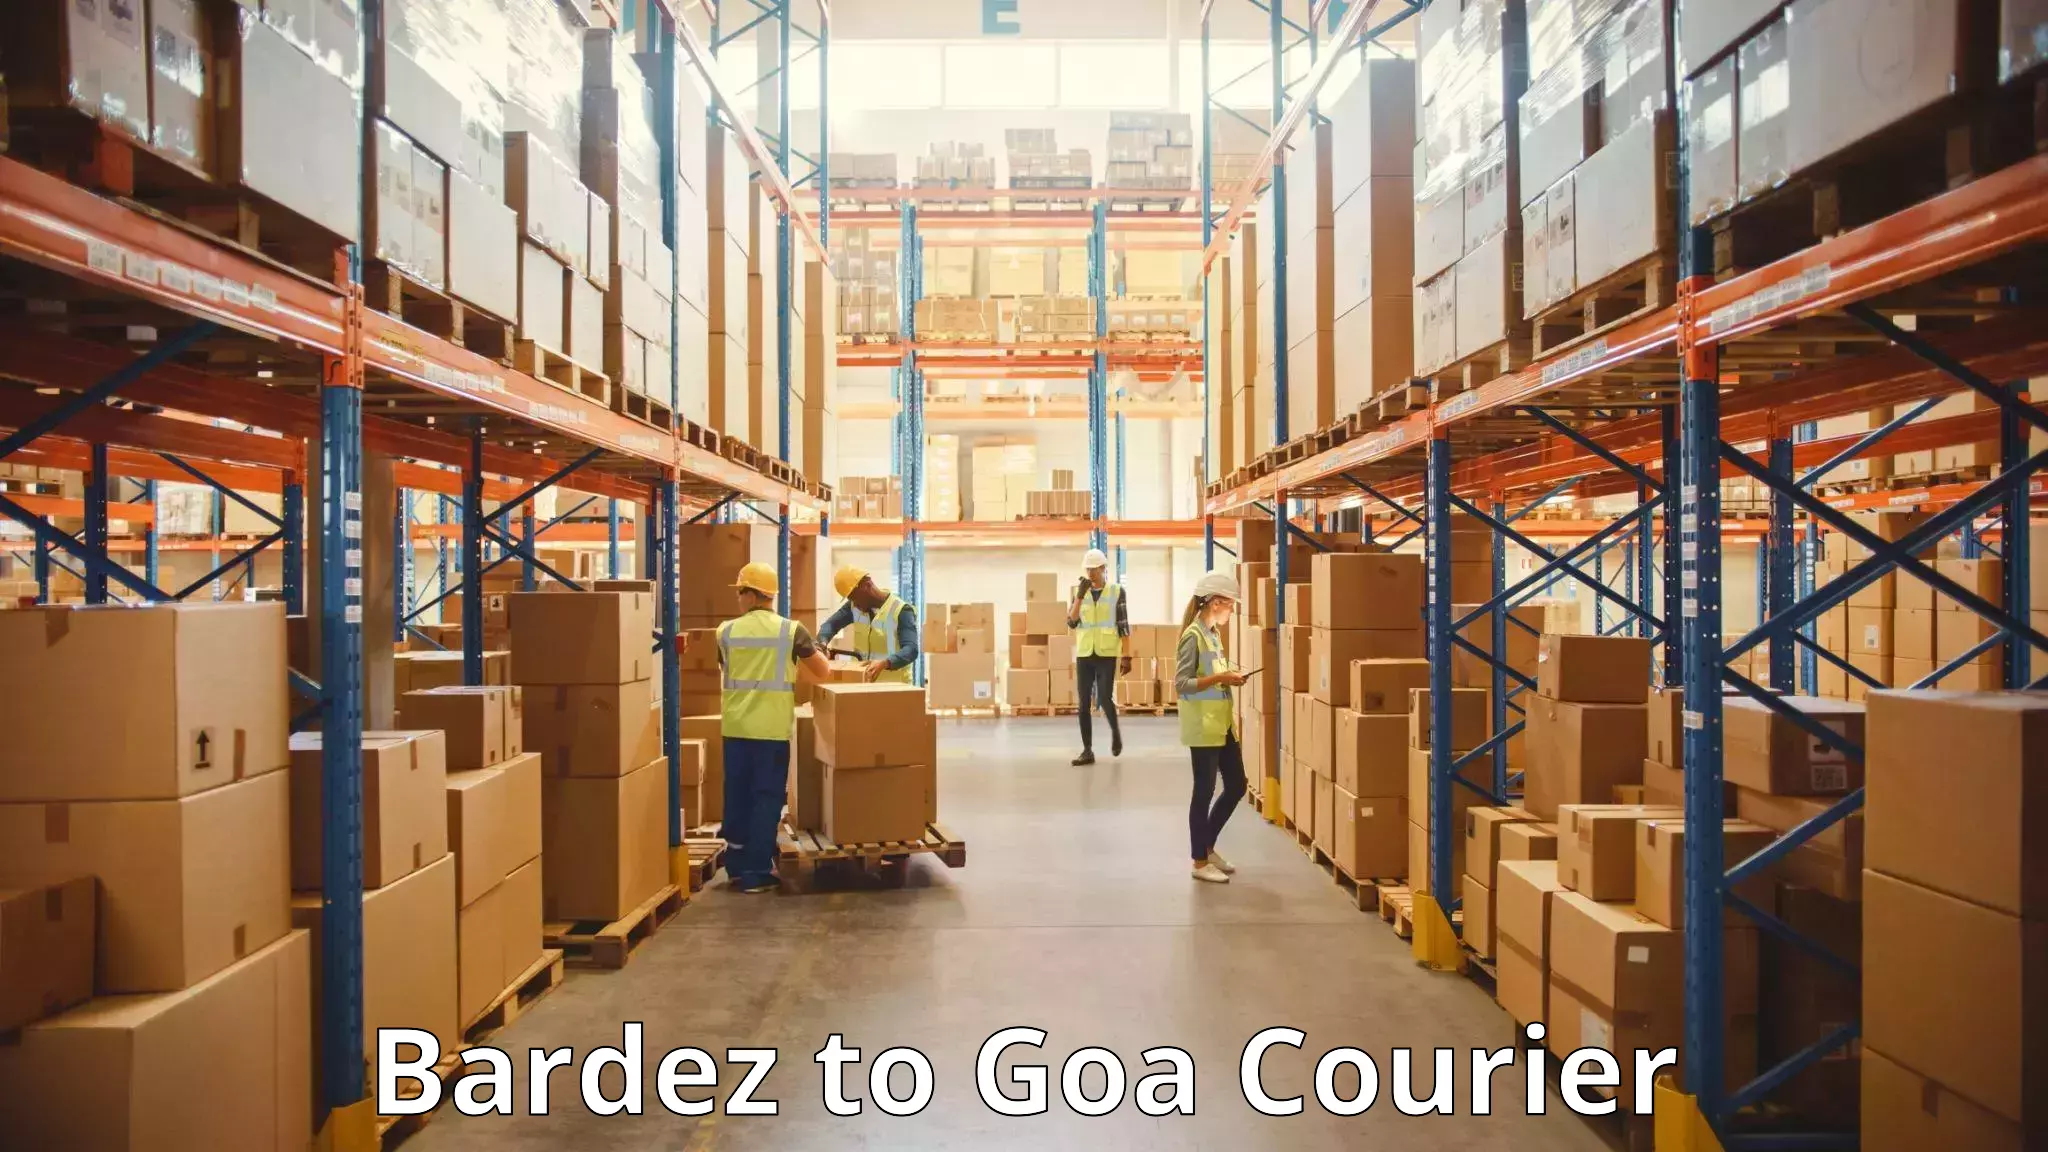 Luggage transport service Bardez to IIT Goa